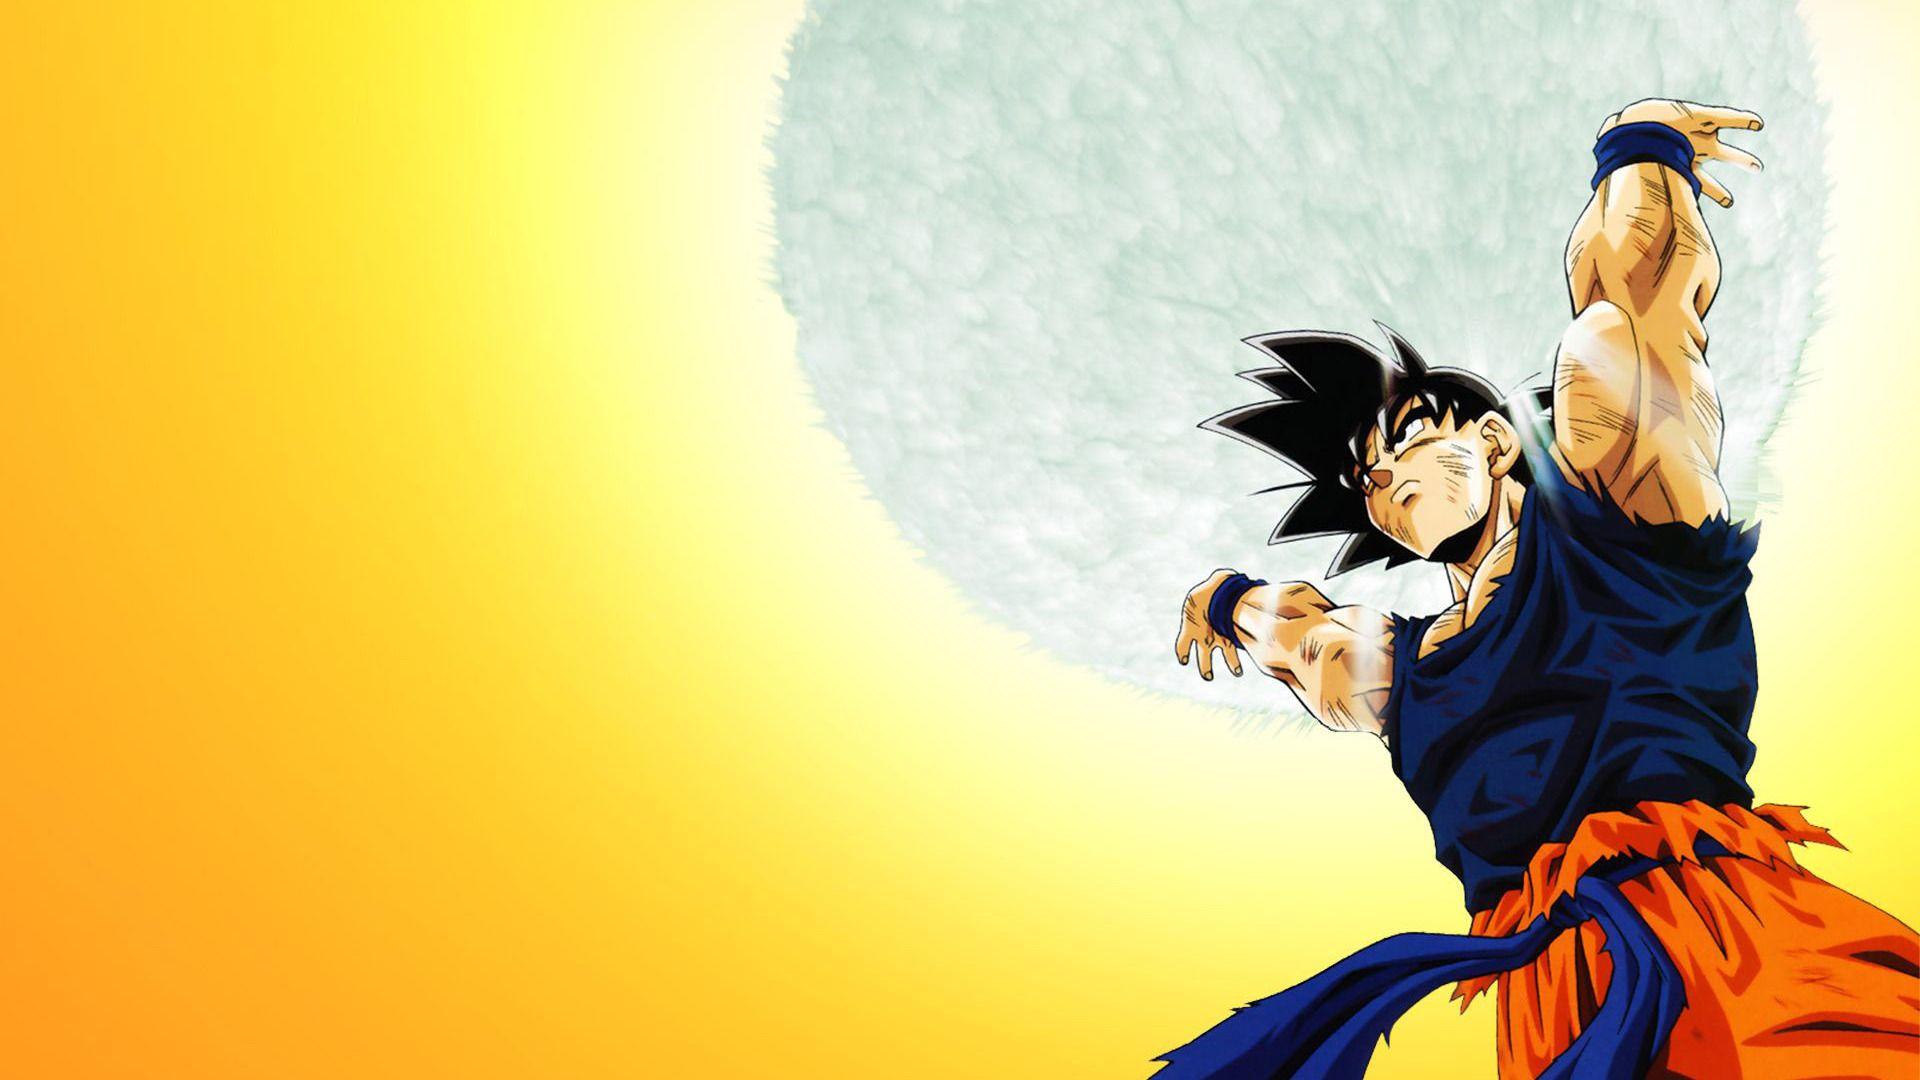 Teknorita: Goku Background Free Download